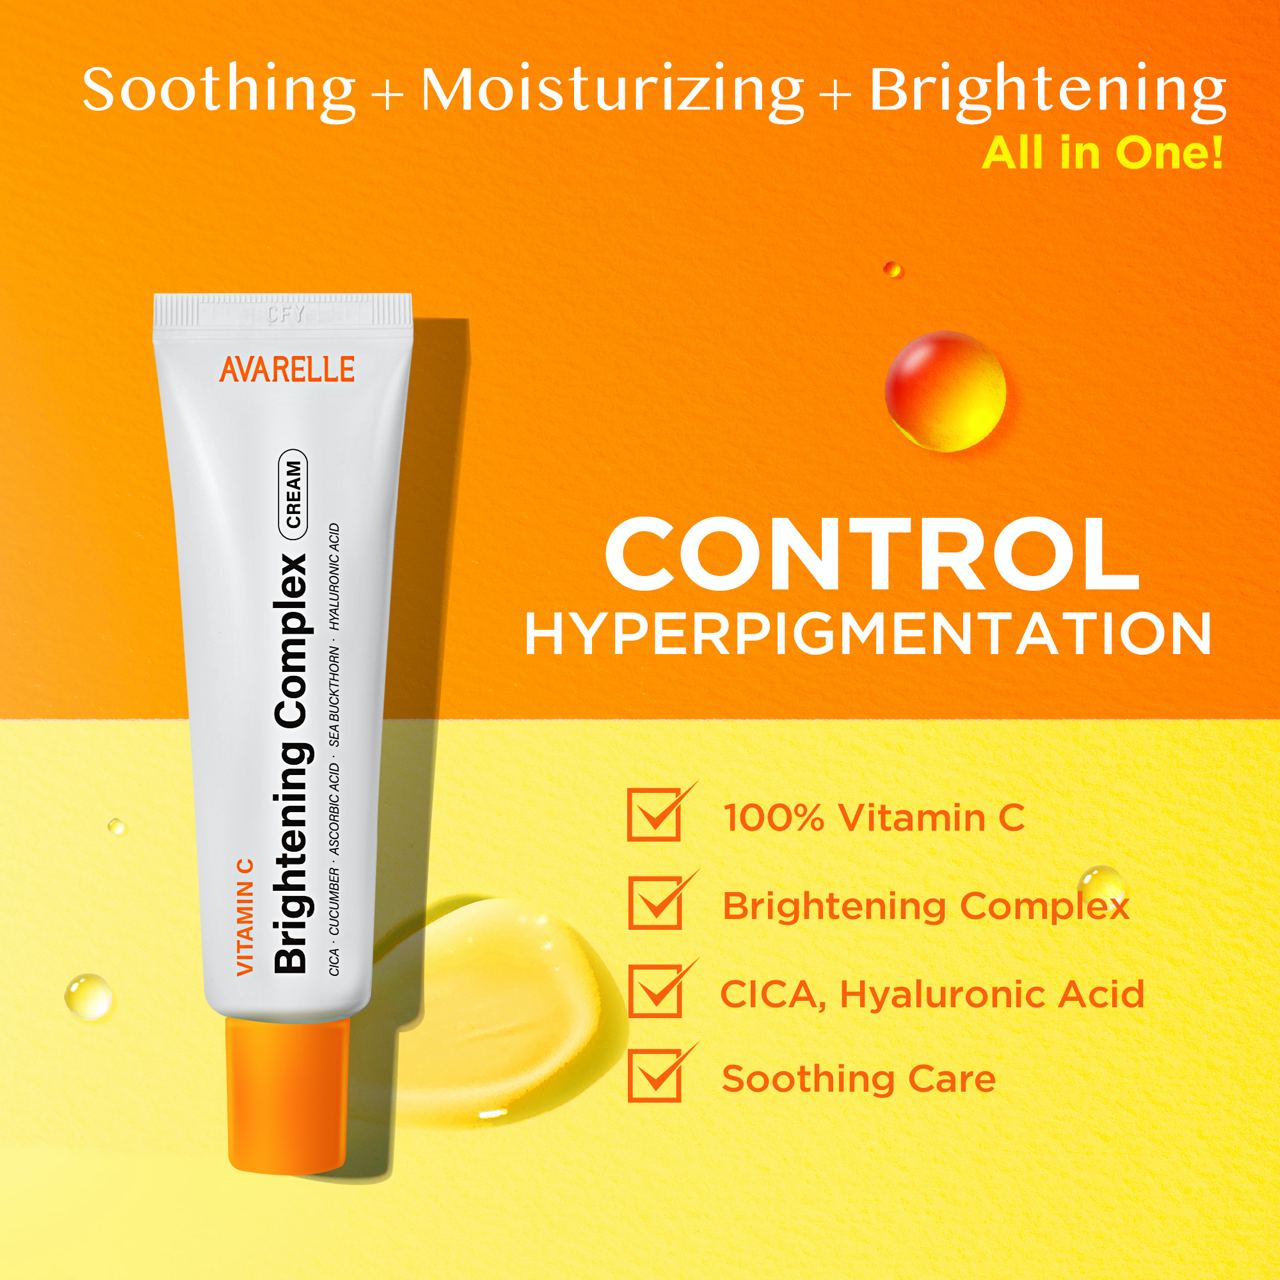 Vitamin C Brightening Complex Cream